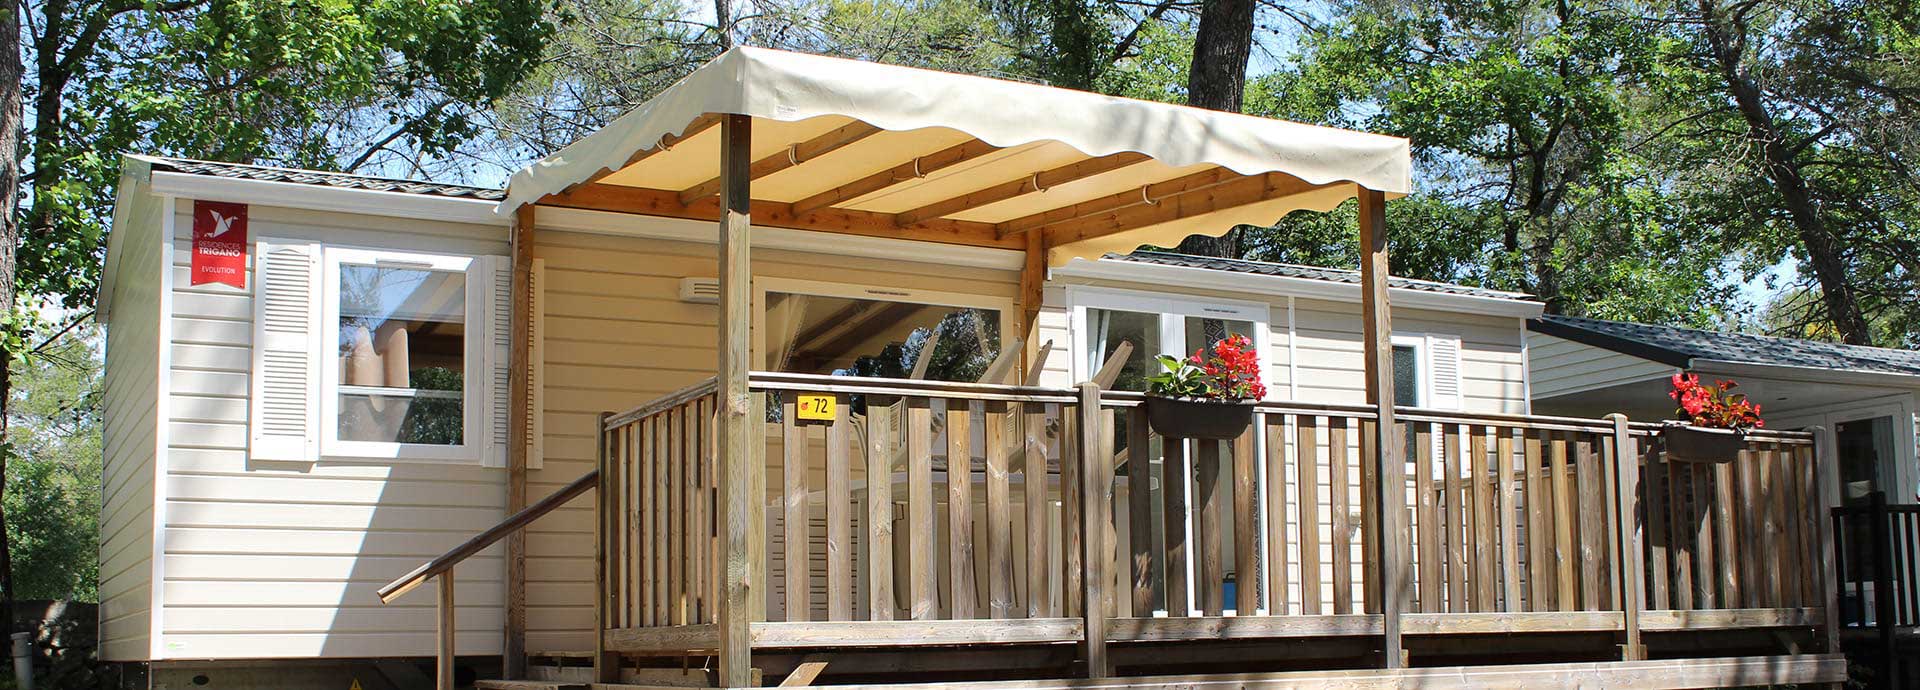 Het terras van 6-persoons mobile home Comfort op camping Le Parc in het achterland van Fréjus.